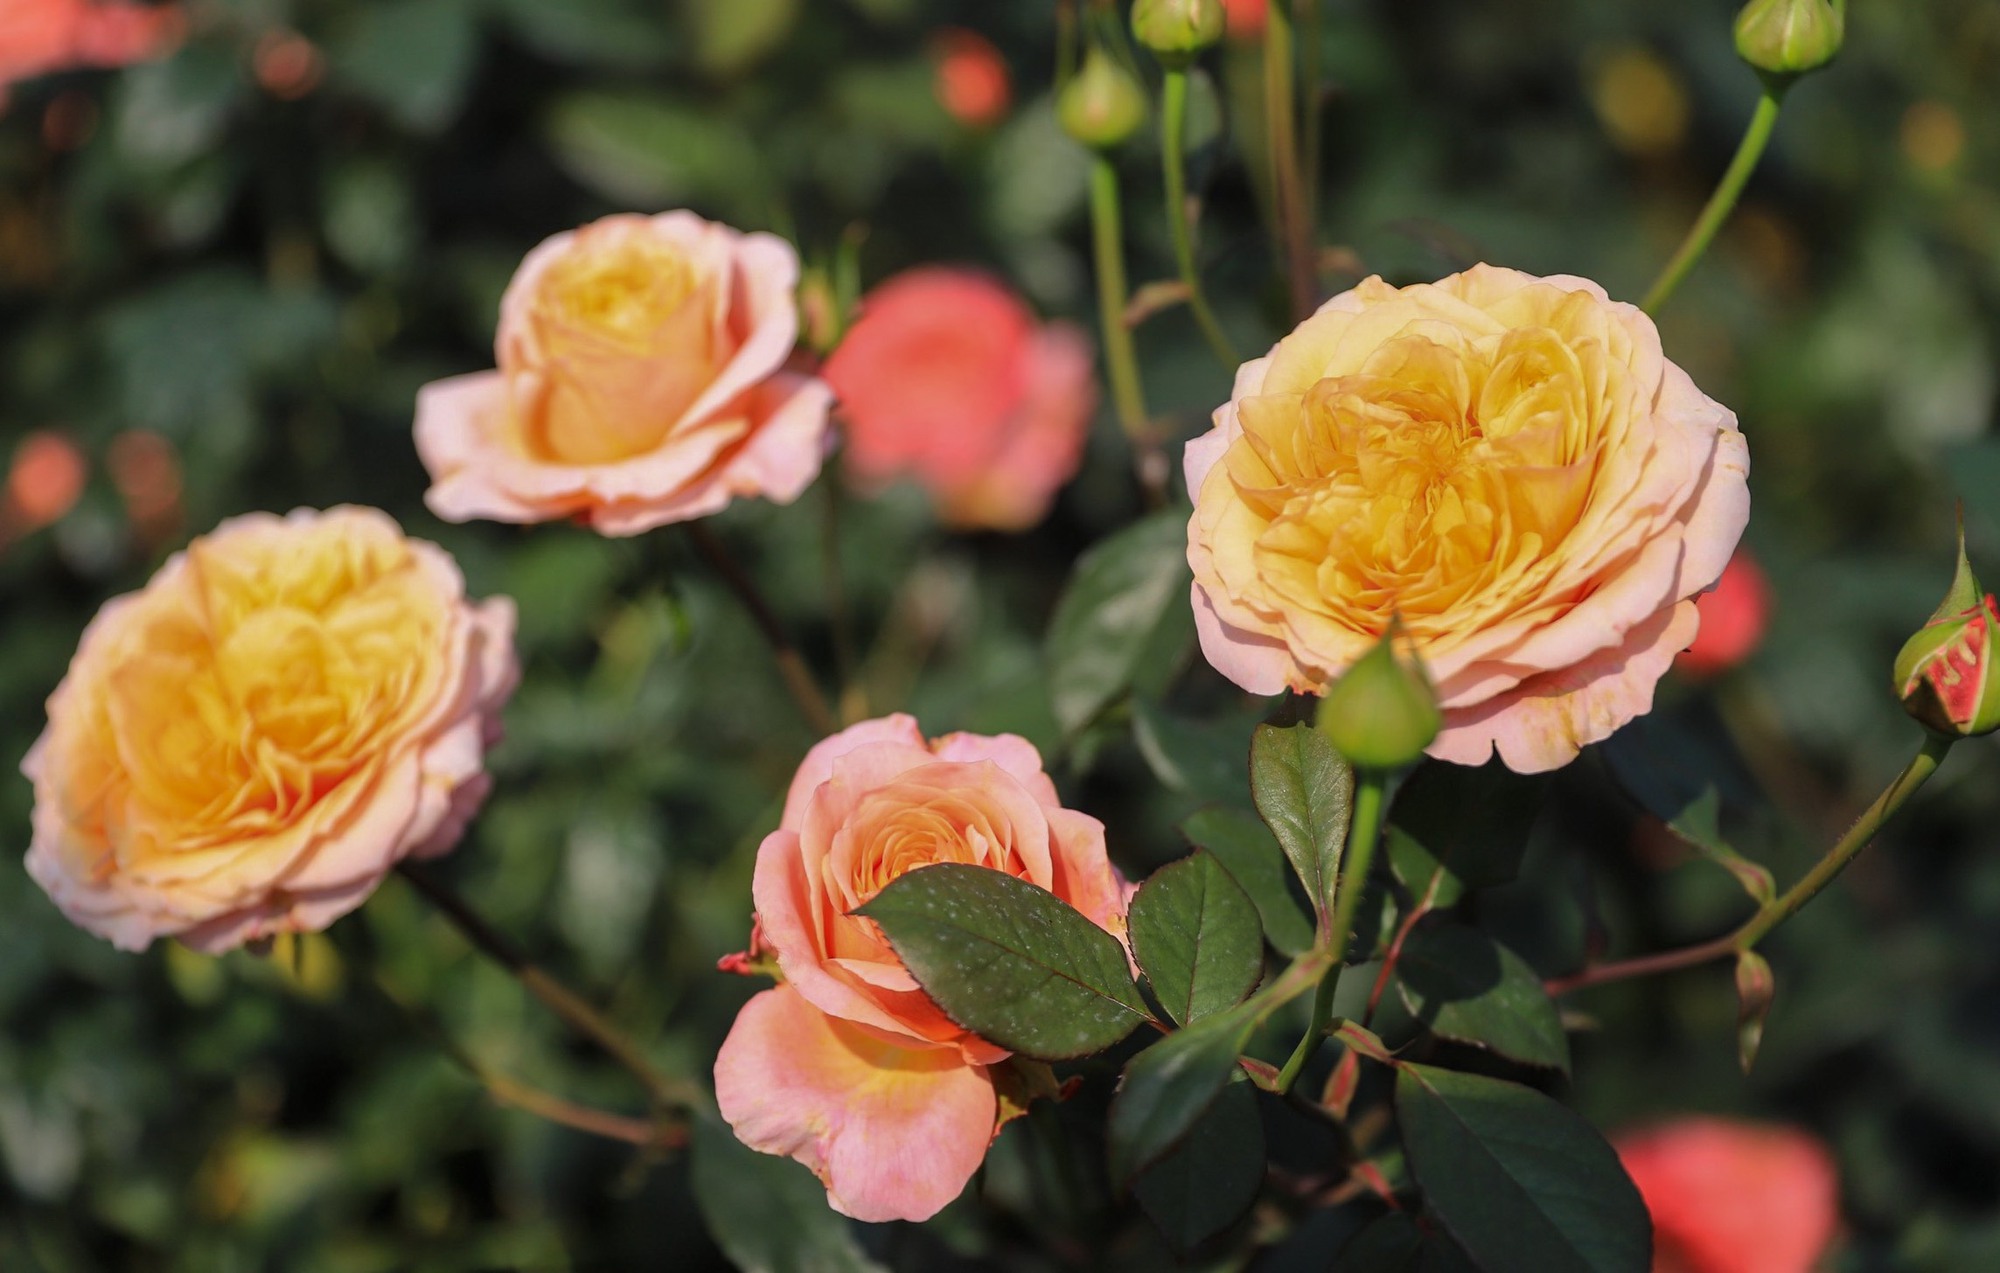 Khám phá vườn hoa hồng rộng 6.000m2 tại Hà Nội - Ảnh 15.